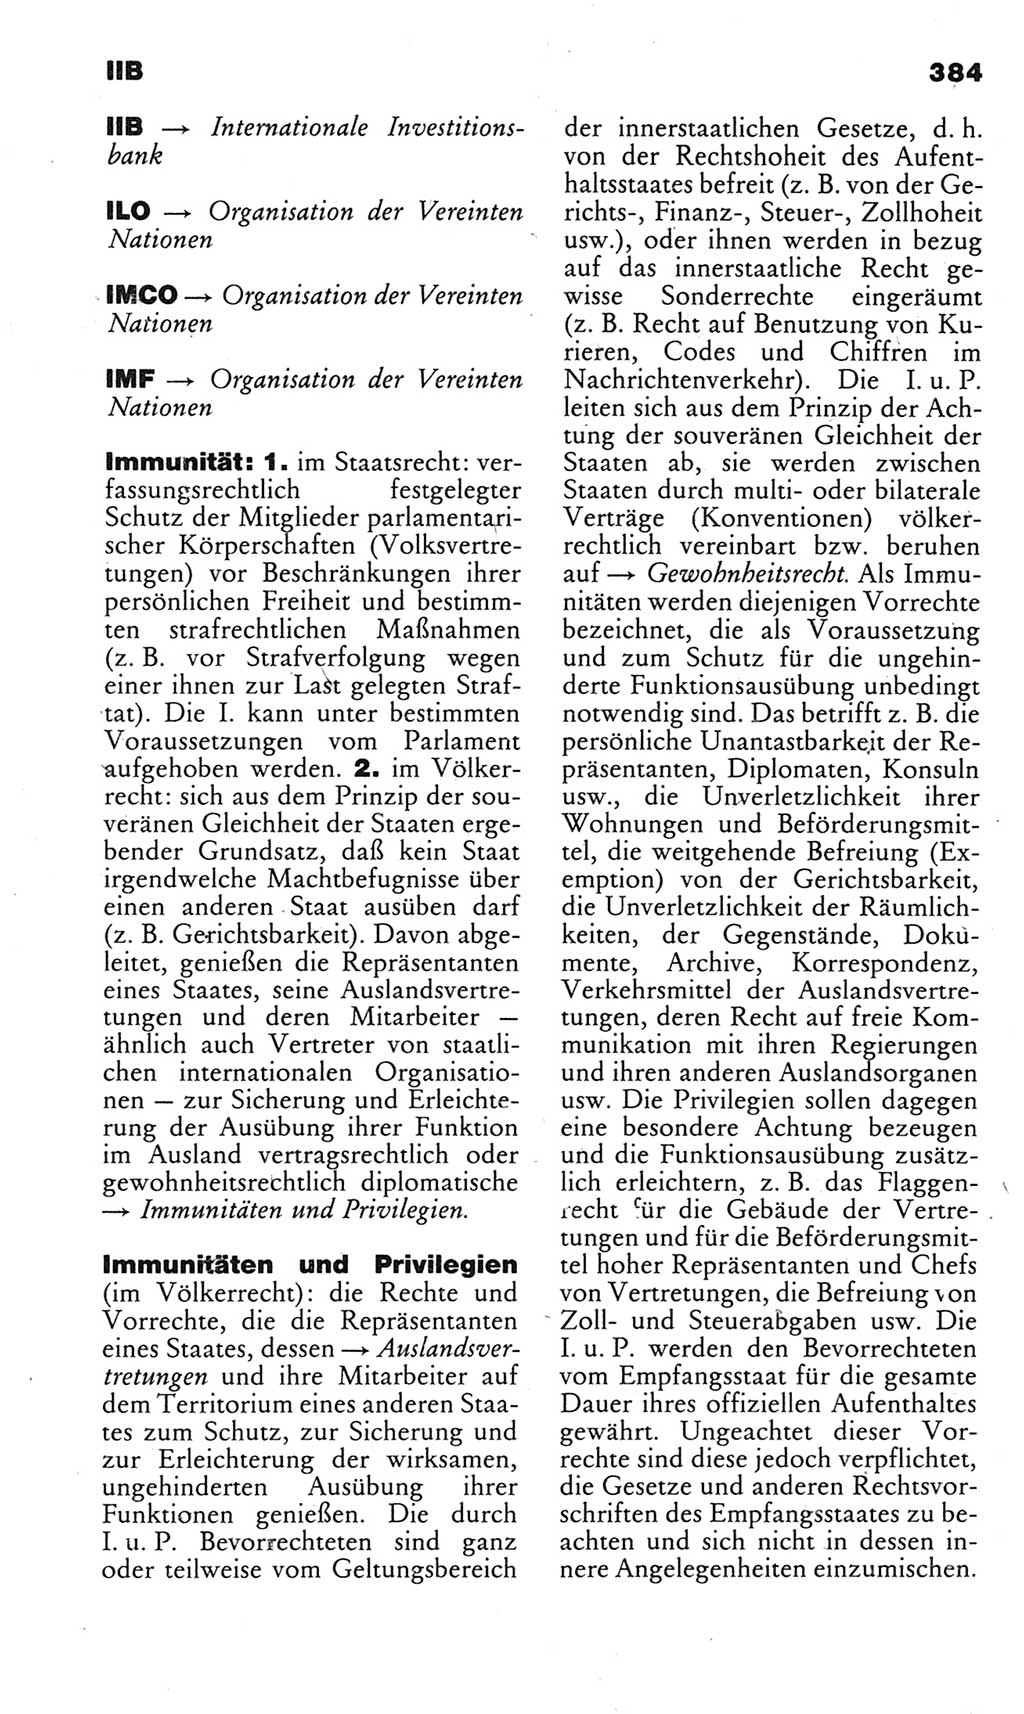 Kleines politisches Wörterbuch [Deutsche Demokratische Republik (DDR)] 1983, Seite 384 (Kl. pol. Wb. DDR 1983, S. 384)